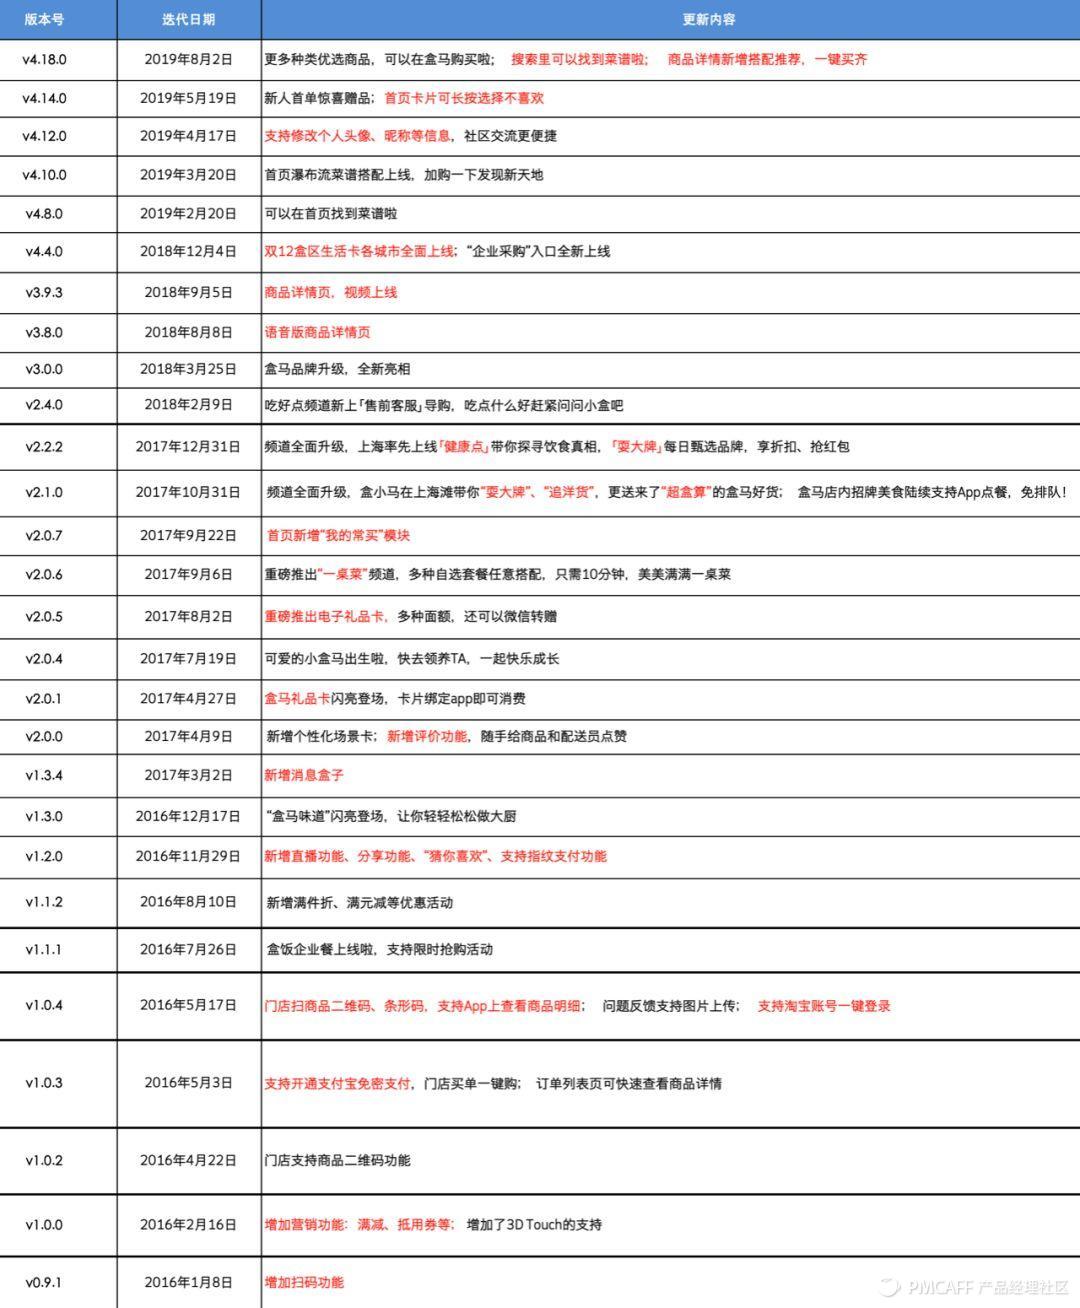 19.08.07 EasonZhang-以“盒马”为例,带你做产品分析报告 - 图15